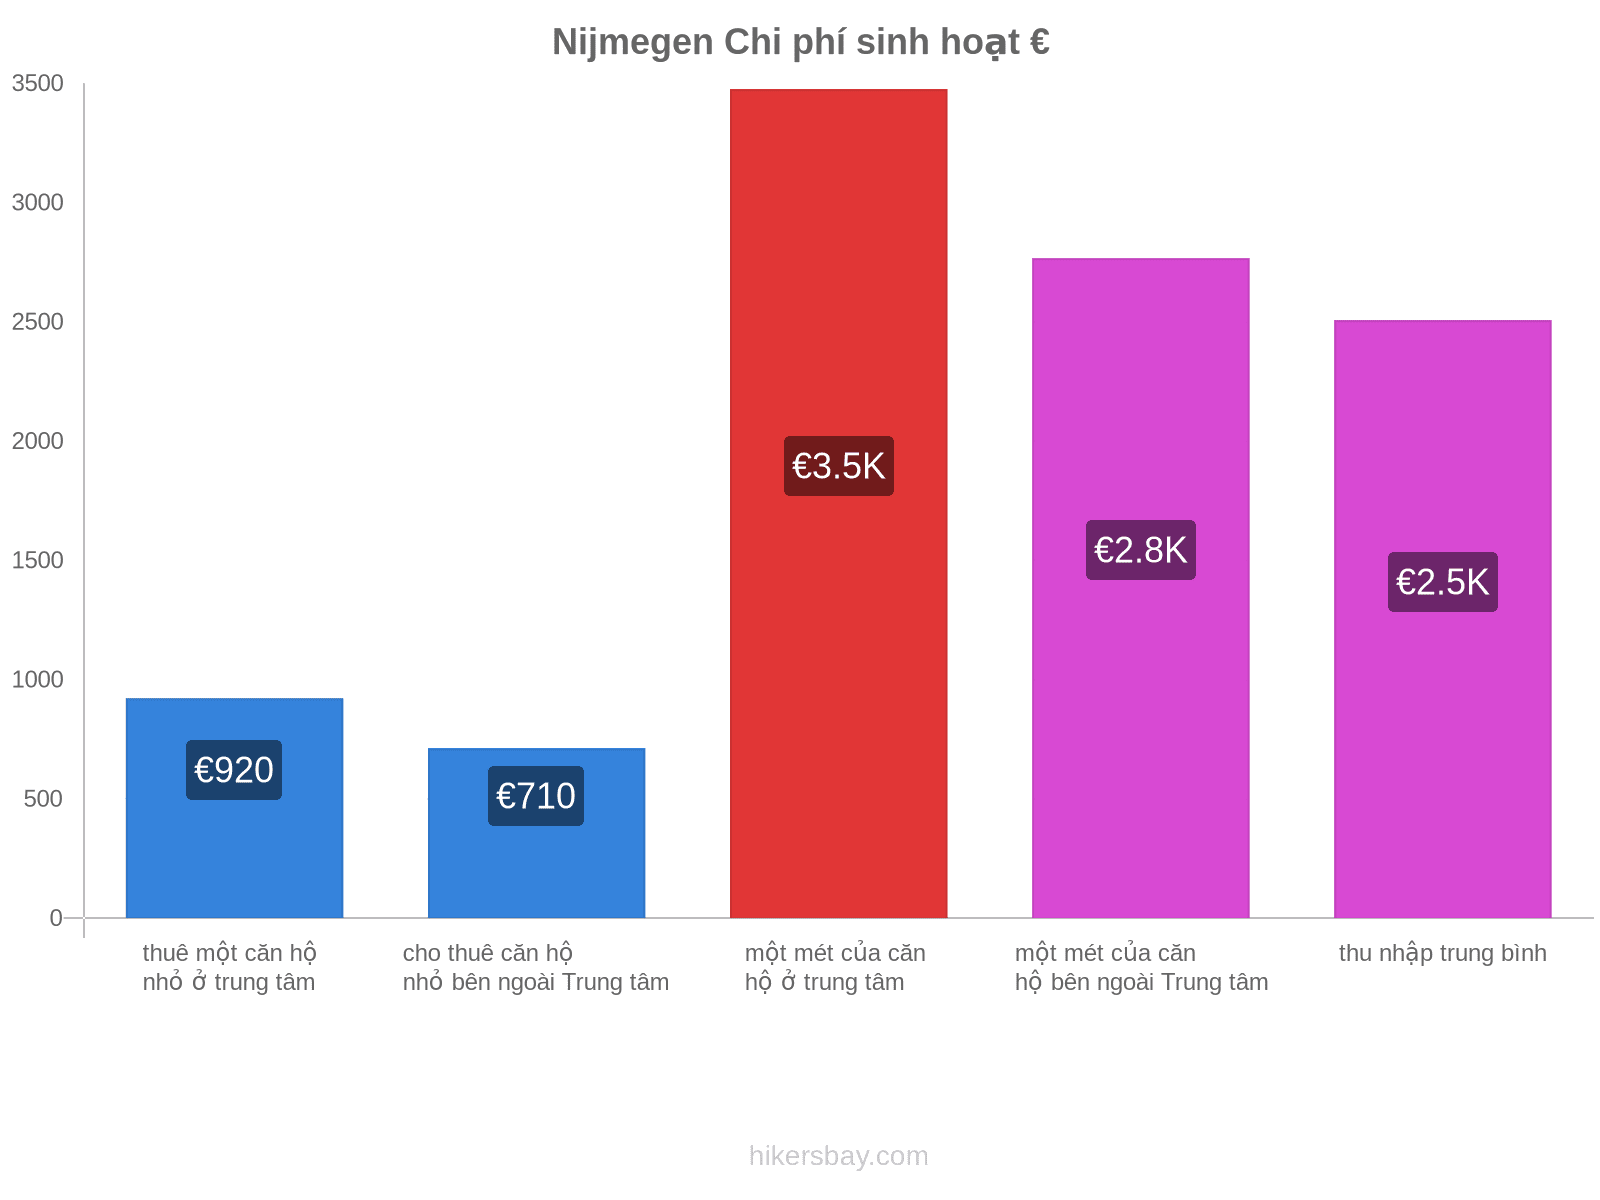 Nijmegen chi phí sinh hoạt hikersbay.com